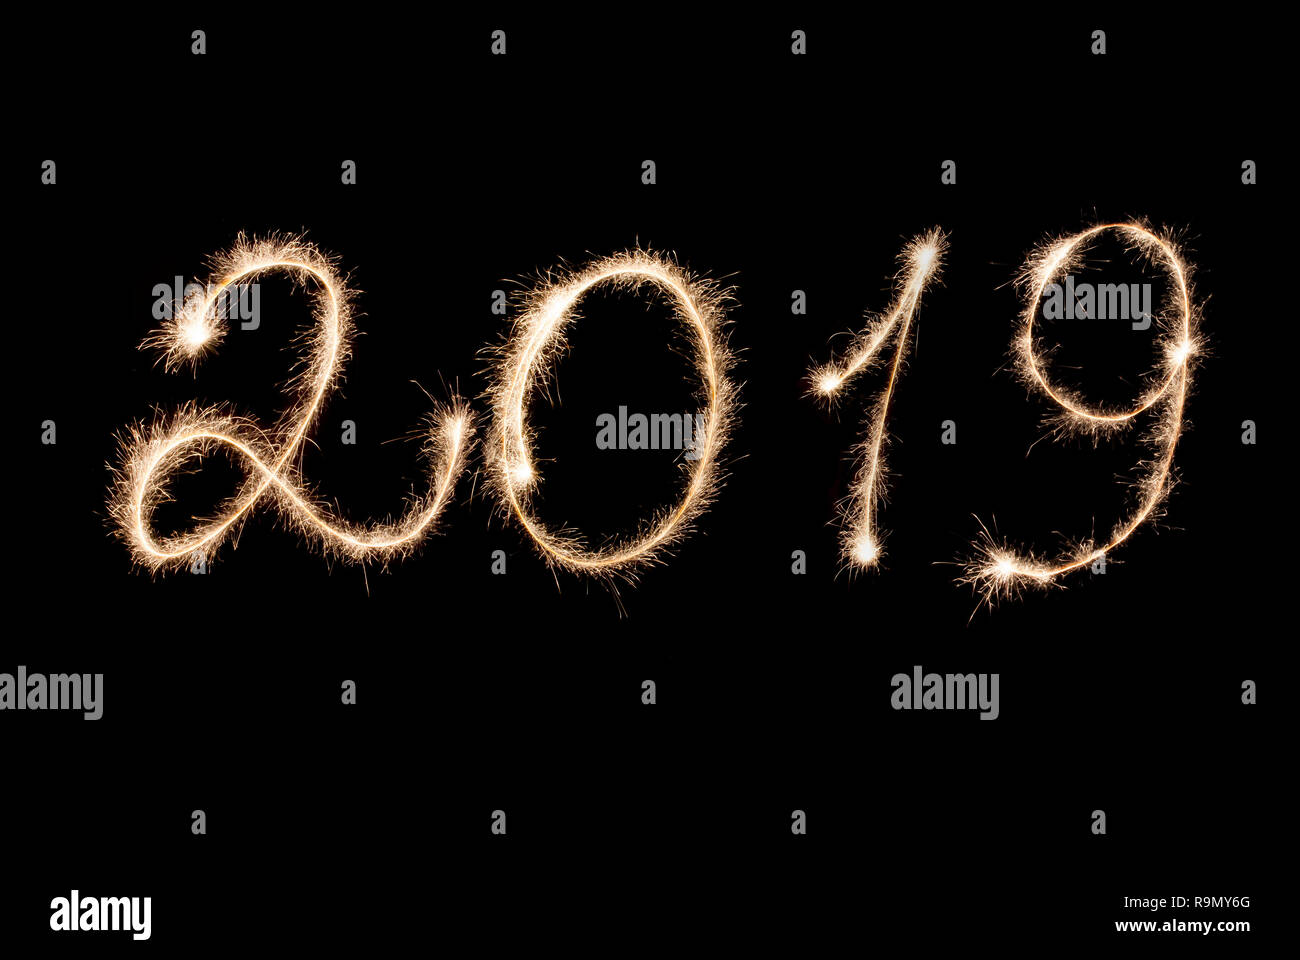 Frohes Neues Jahr 2019 Inschrift Wunderkerzen auf schwarzem Hintergrund. Stockfoto